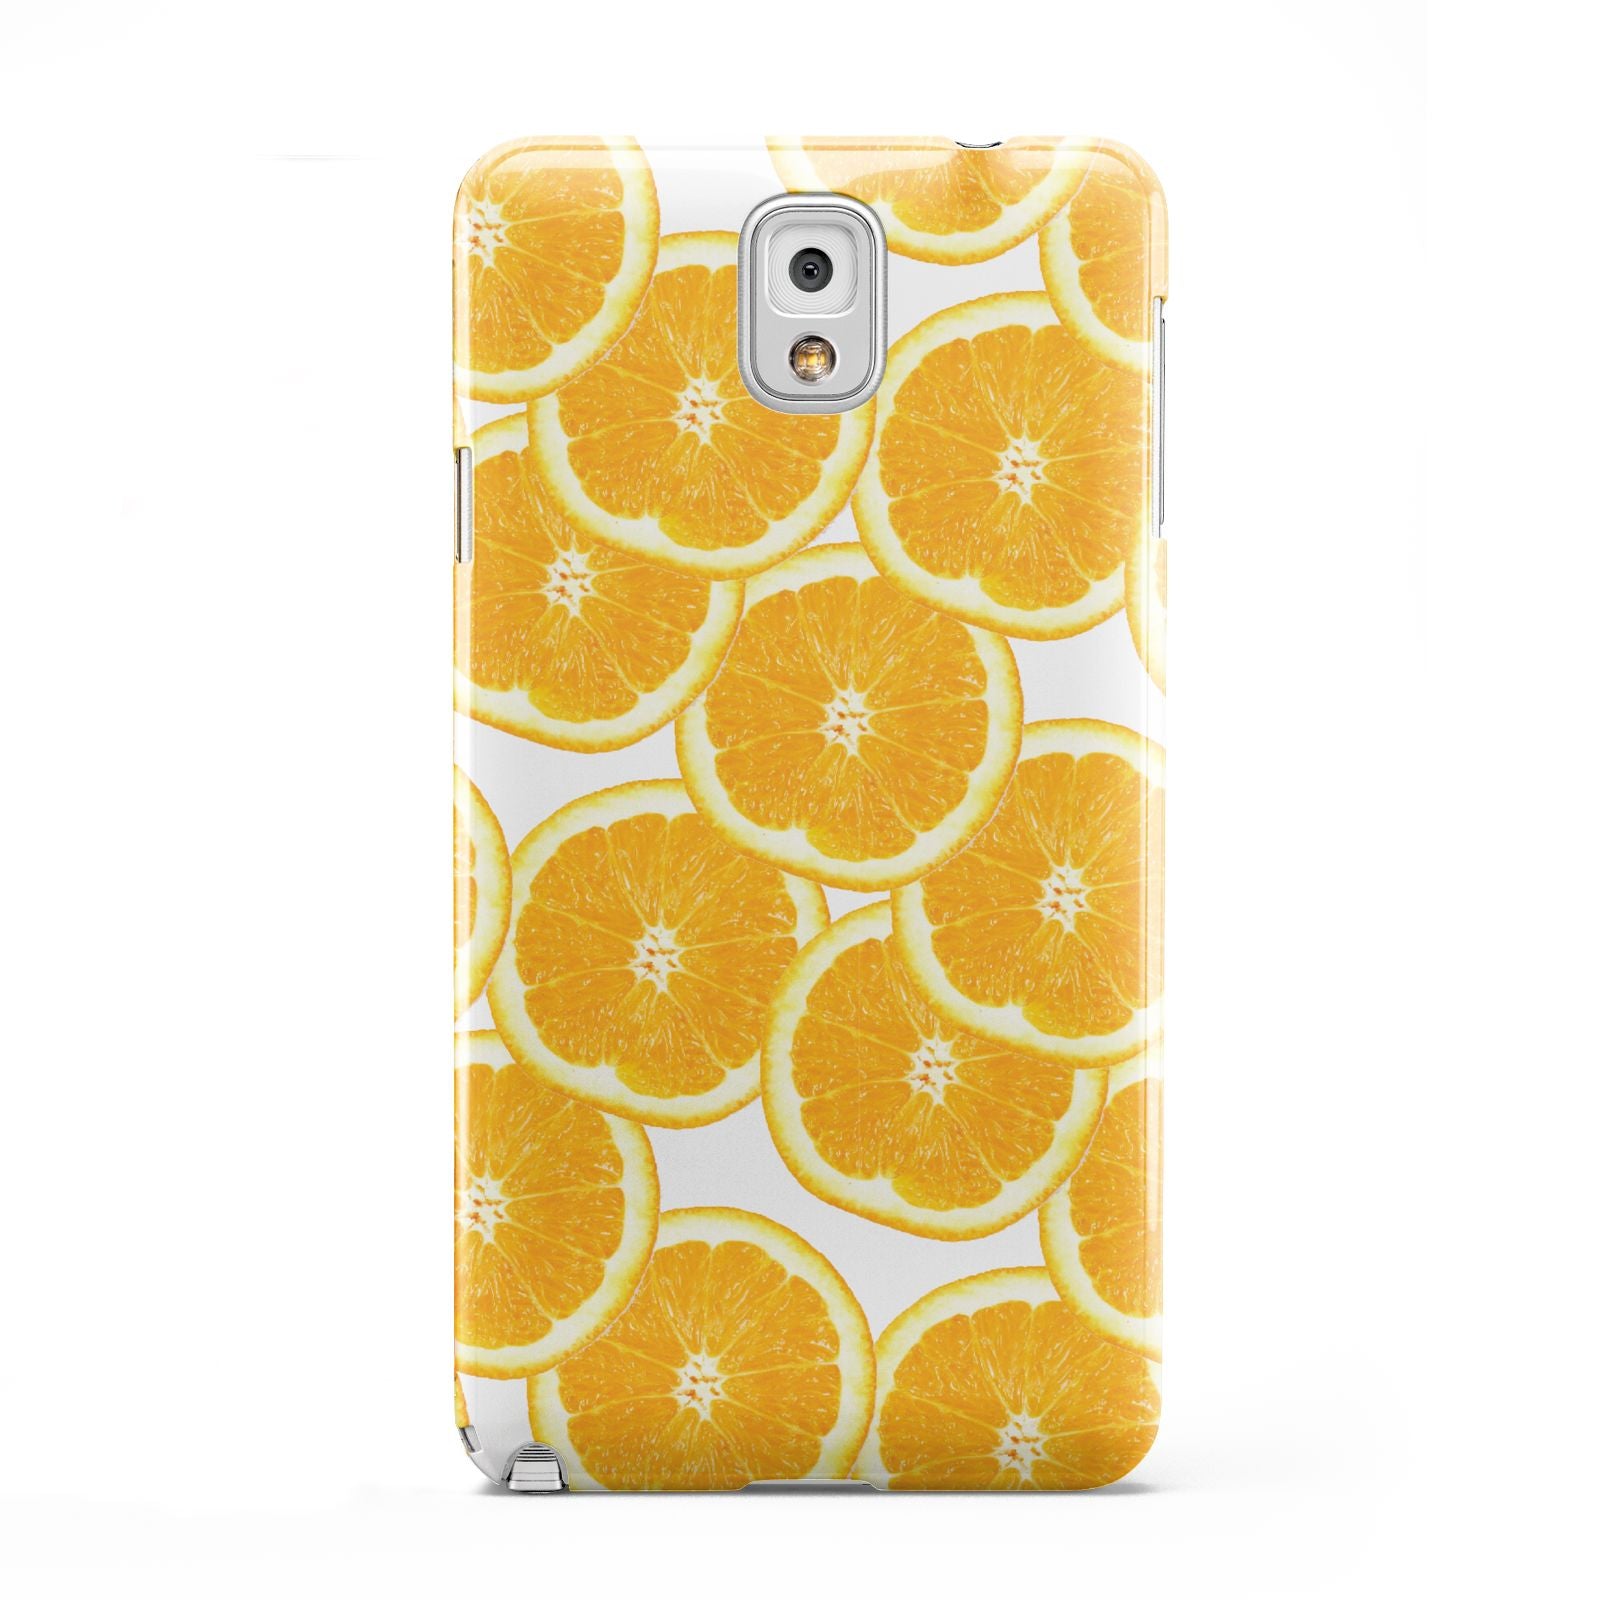 Orange Fruit Slices Samsung Galaxy Note 3 Case